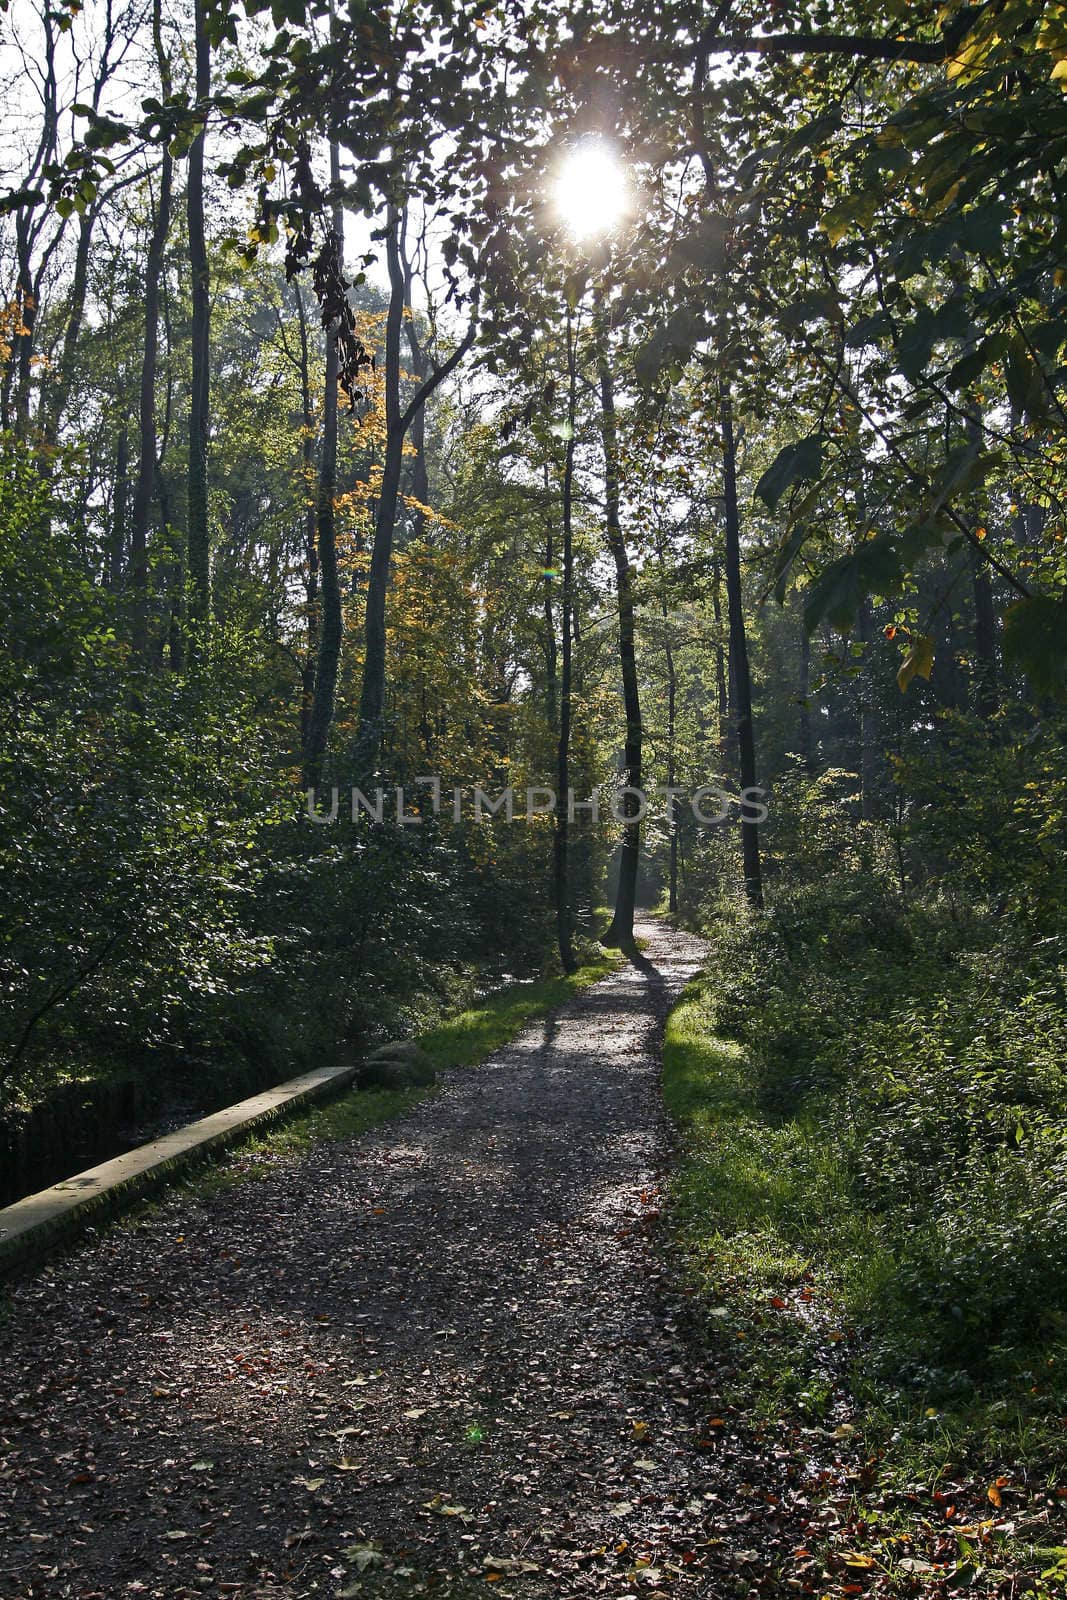 Path in the forest, Georgsmarienhütte, Lower Saxony, Germany.
Waldweg im Kasinopark, Georgsmarienhütte